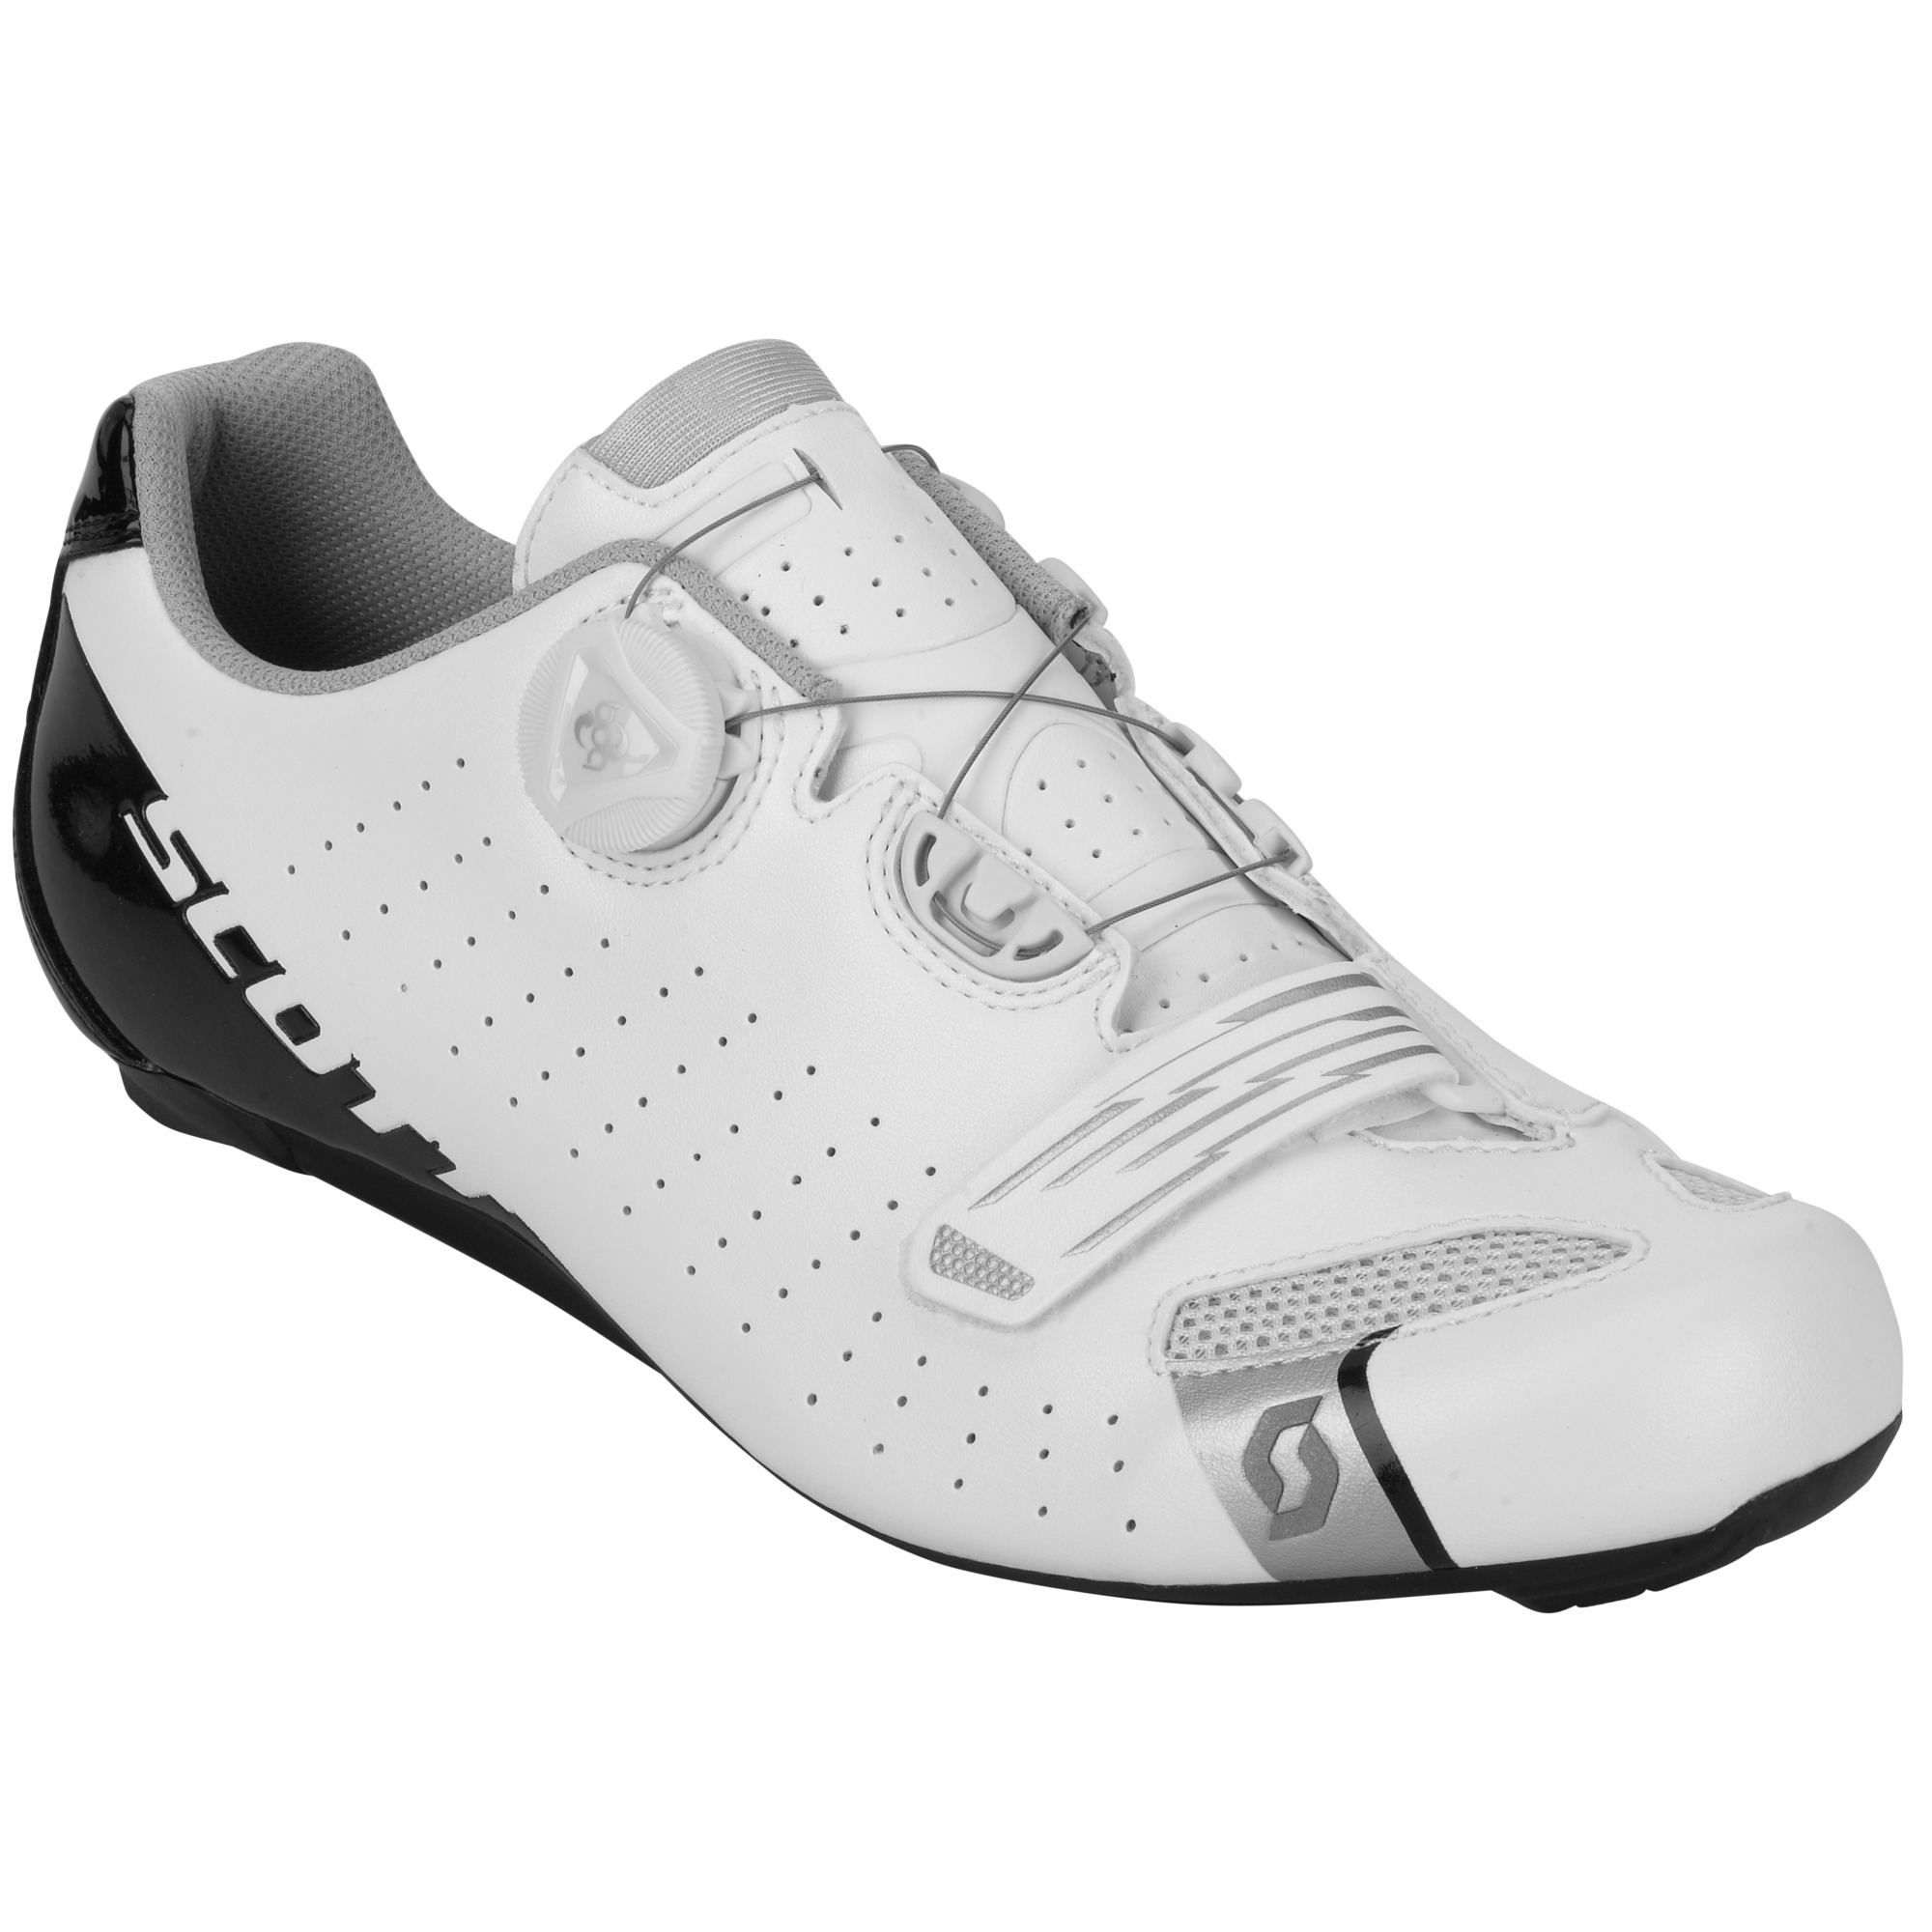 Scott Men's White Comp Boa White Road Shoes